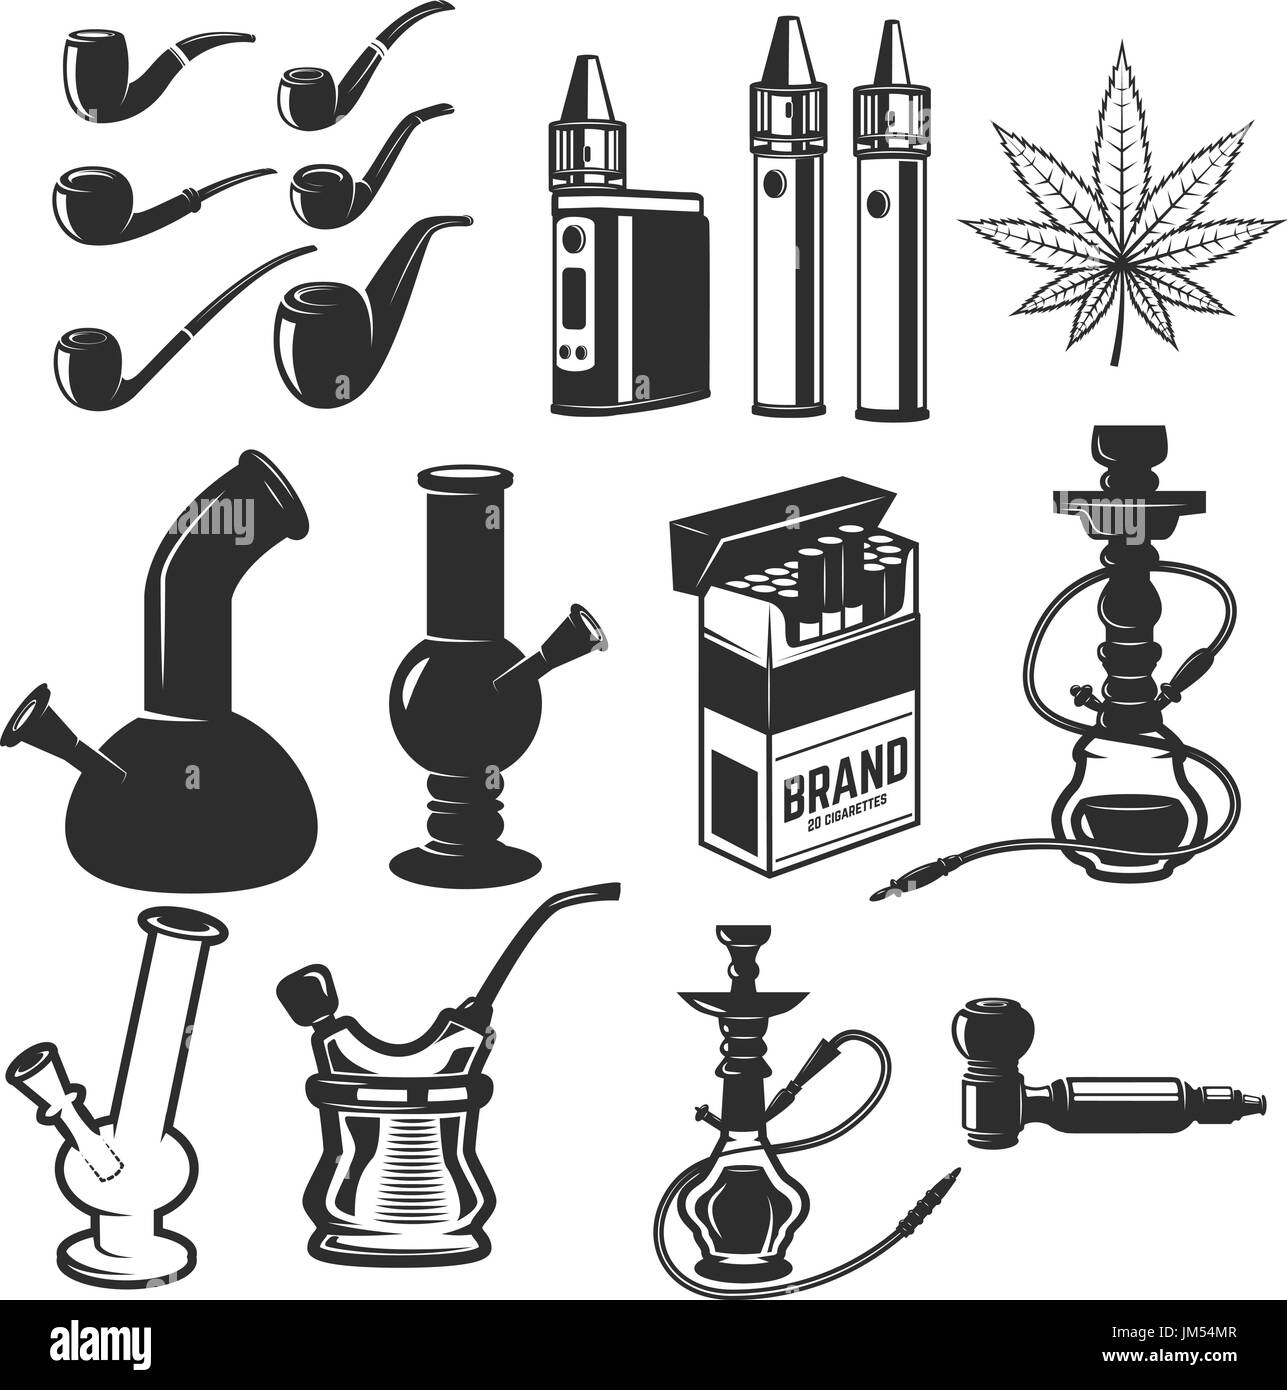 Satz von Rauchen Ausrüstung. Bongs, dampft, Pfeifen, Shisha rauchen. Design-Elemente für Label, Wahrzeichen, Zeichen. Vektor-illustration Stock Vektor